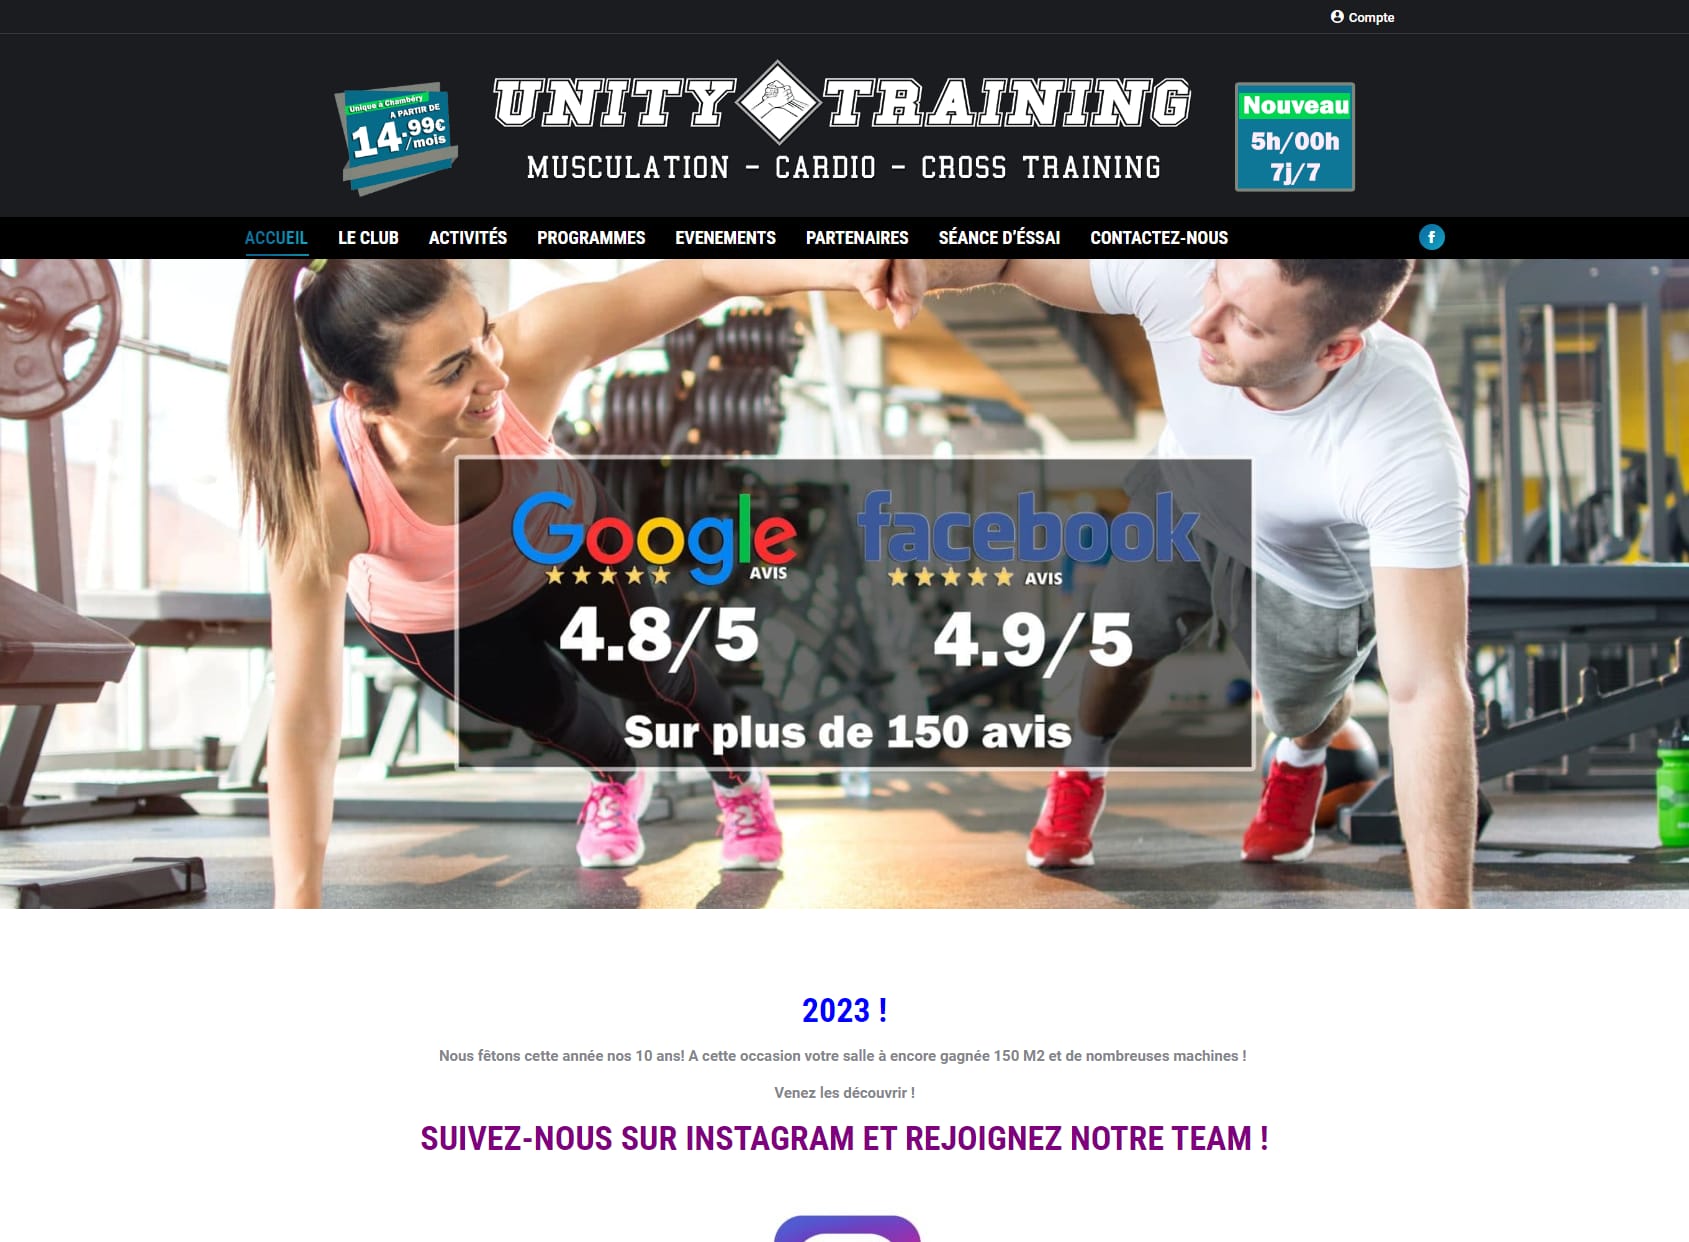 Unity Training